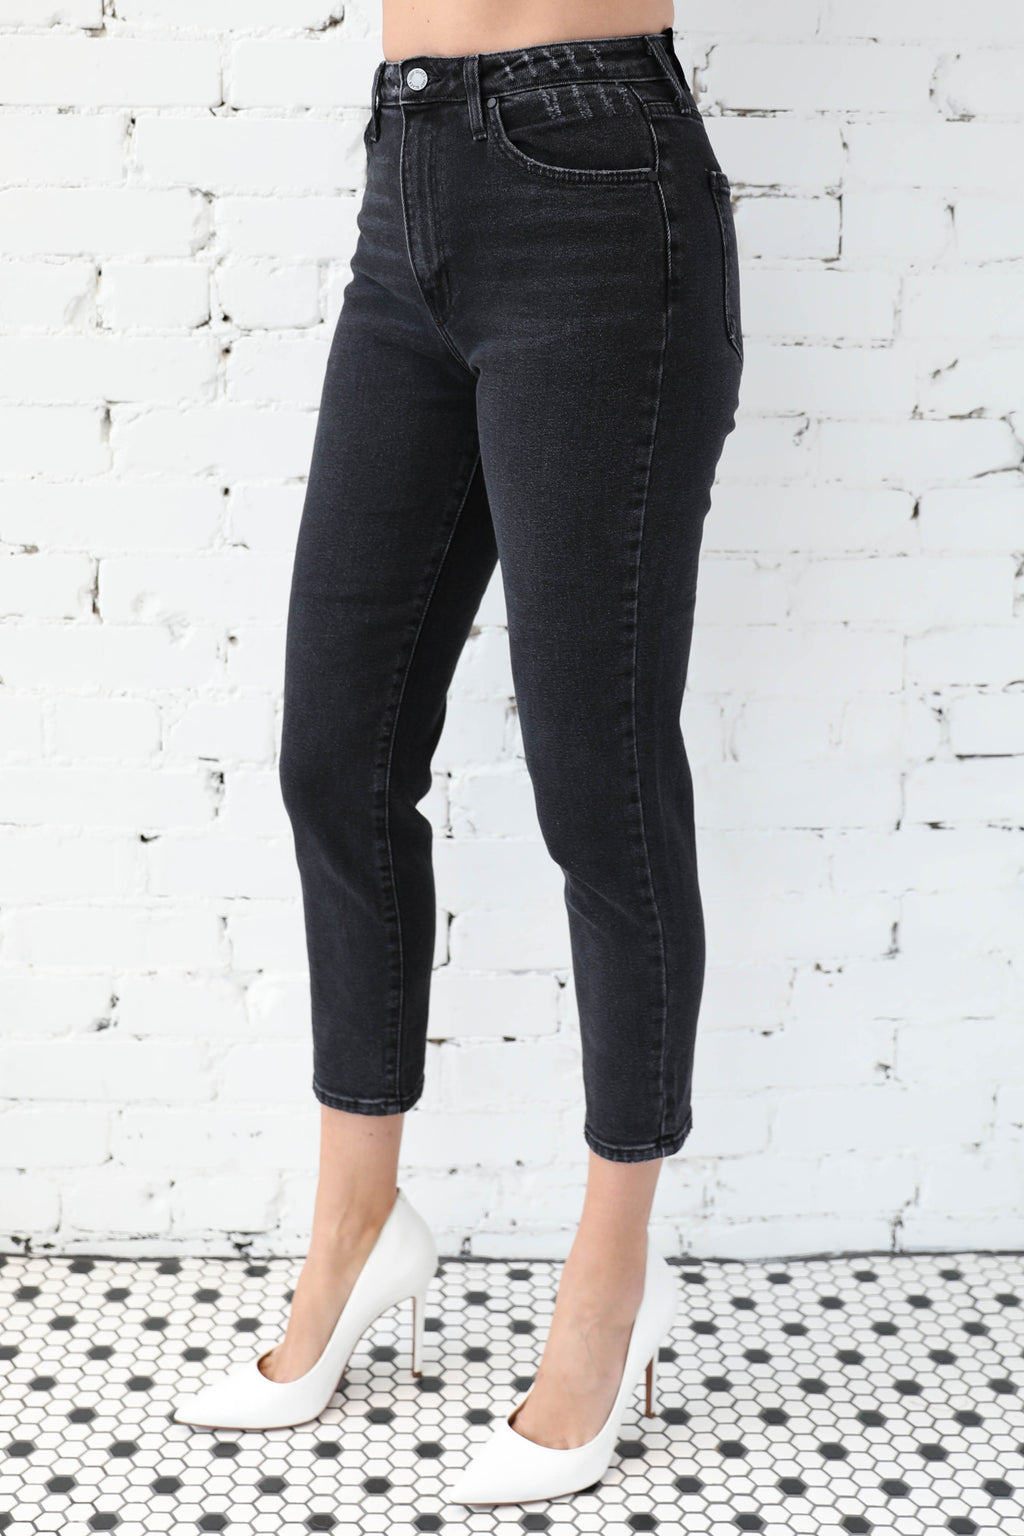 Women's Jeans, Denim Shorts & Jean Jackets | Parpar Clothing